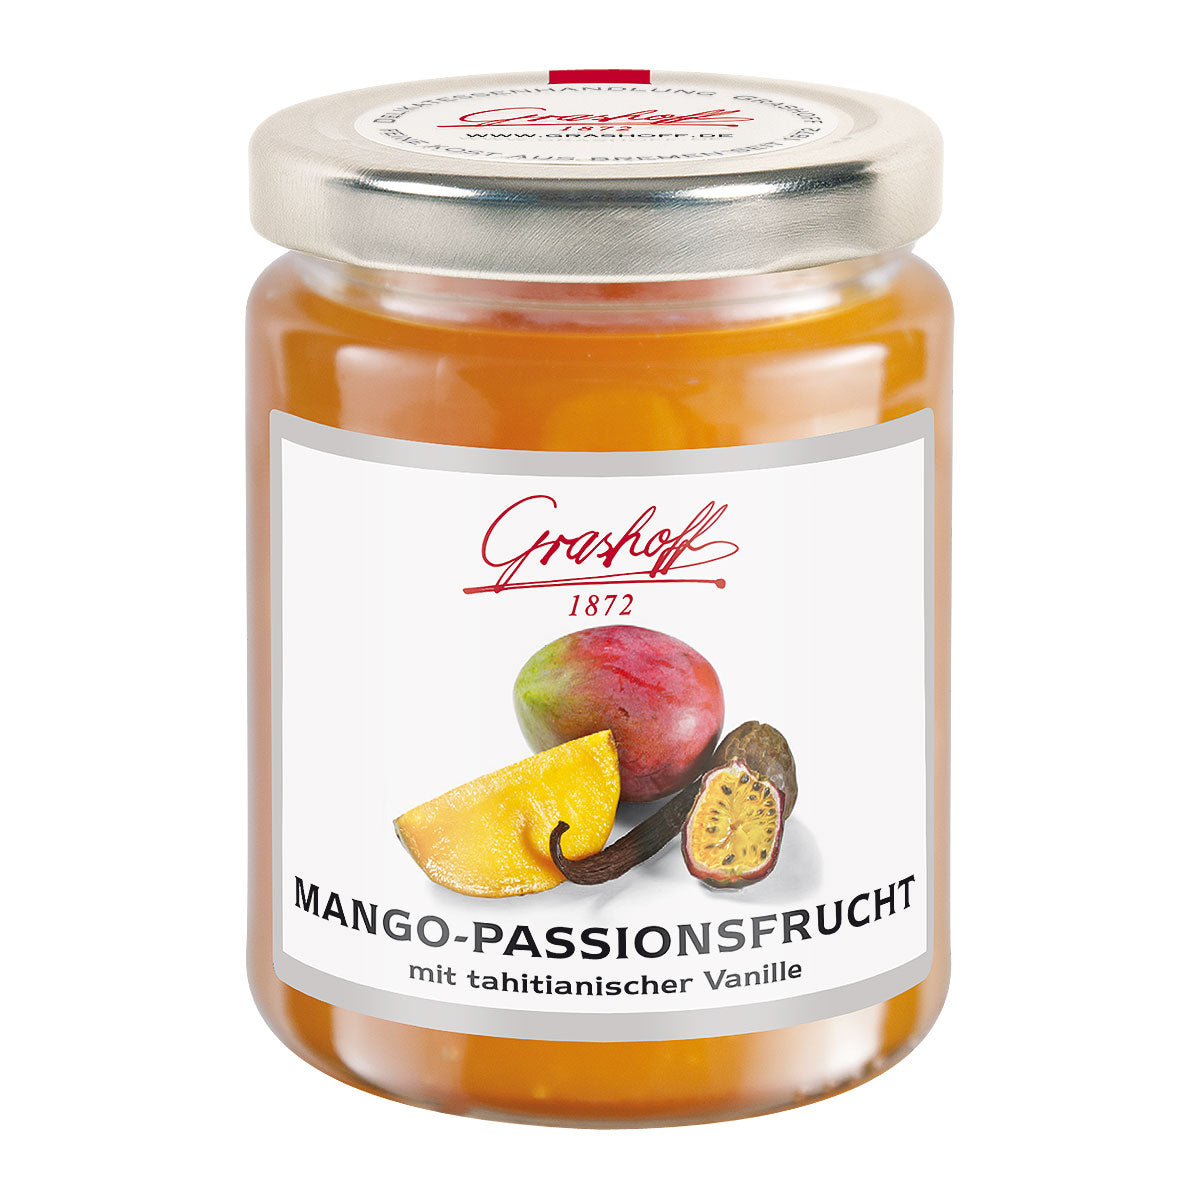 Grashoffs Mango-Passionsfrucht mit Tahitianischer Vanille im Glas